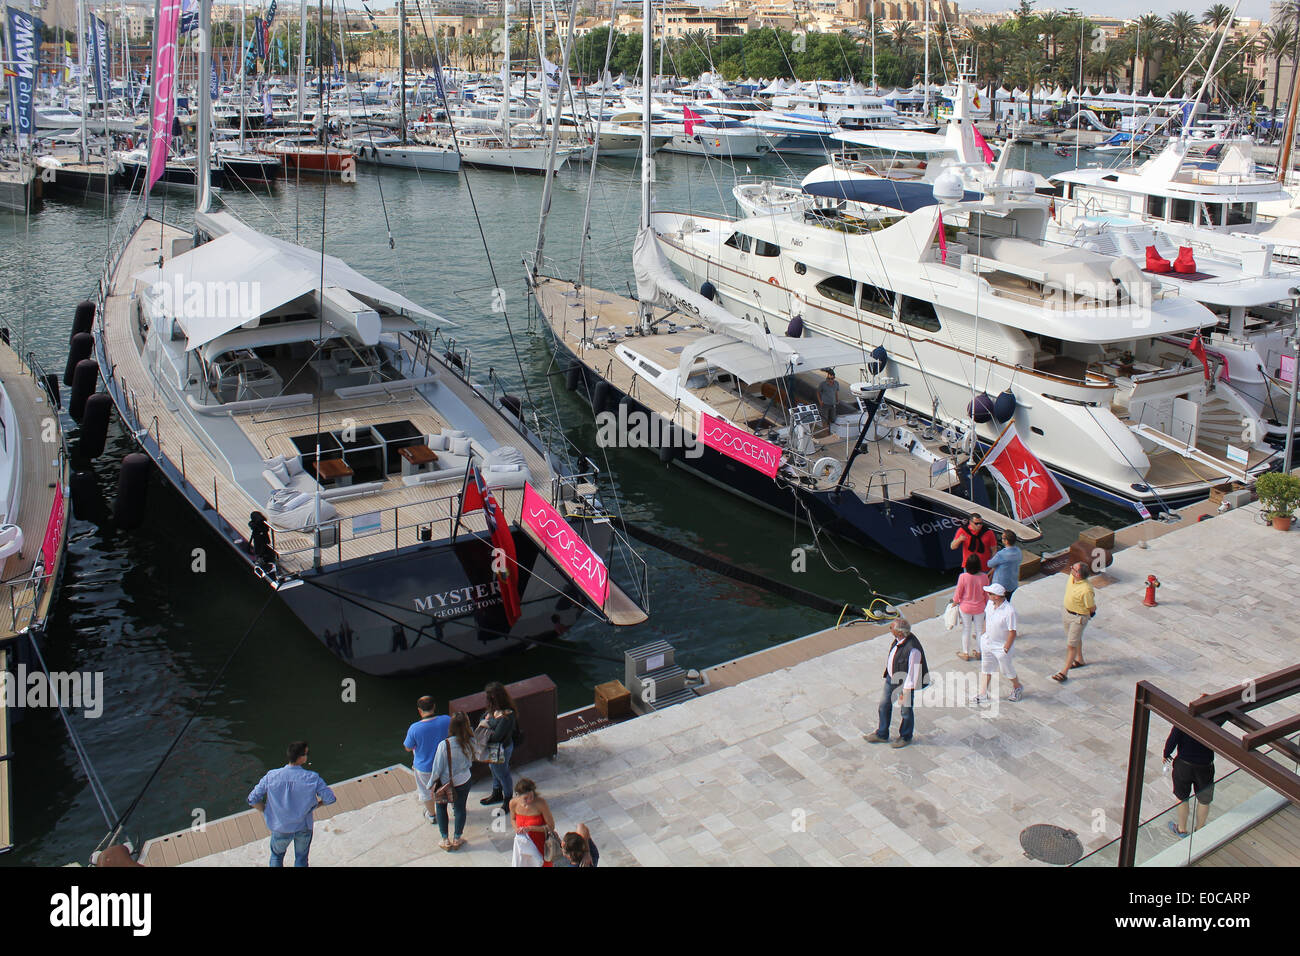 Palma Boat Show 2014 / Palma Superyacht Show 2014 - Palma de Mallorca / Majorca, Balearic Islands, Spain. 4th May 2014. Stock Photo